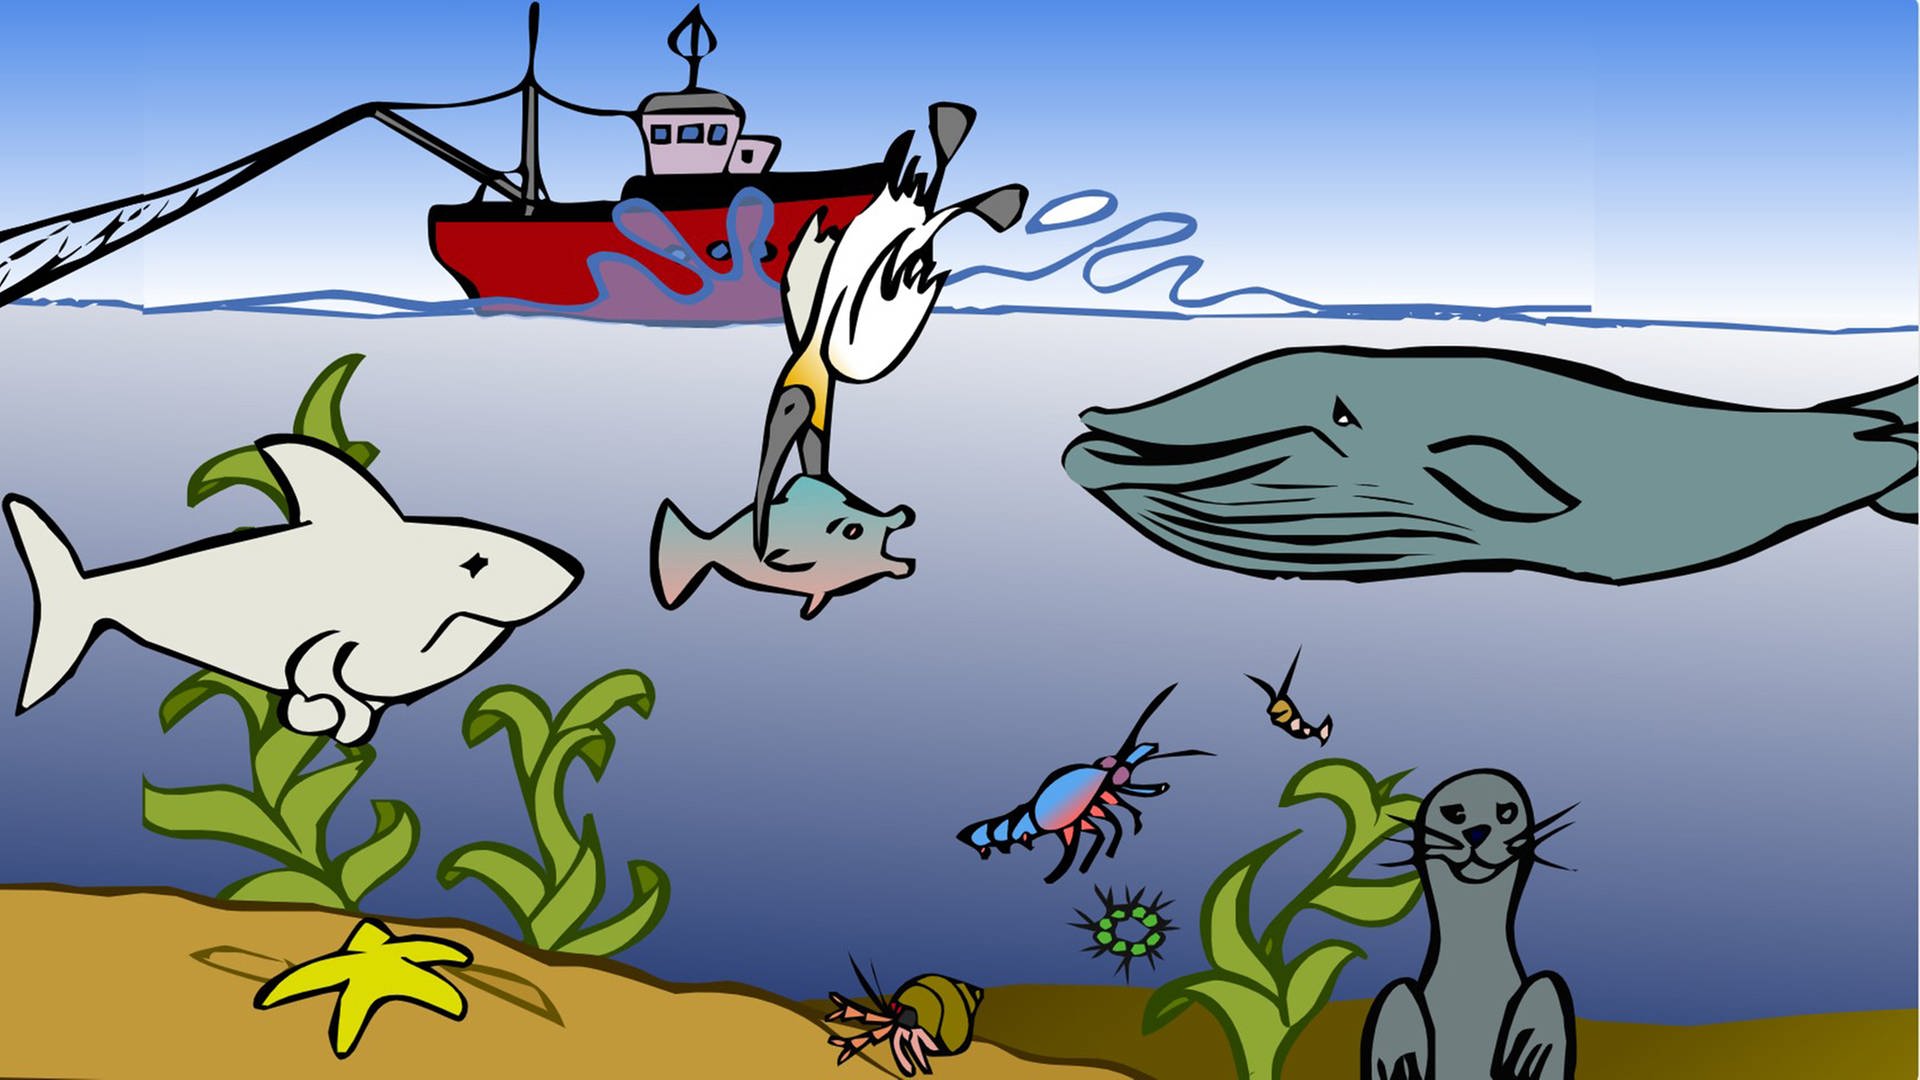 In der Animation zur Nahrungskette im Meer schnappt sich ein Seevogel einen Fisch. Beide gehören zu den Konsumenten und werden beispielsweise vom Hai gefressen.